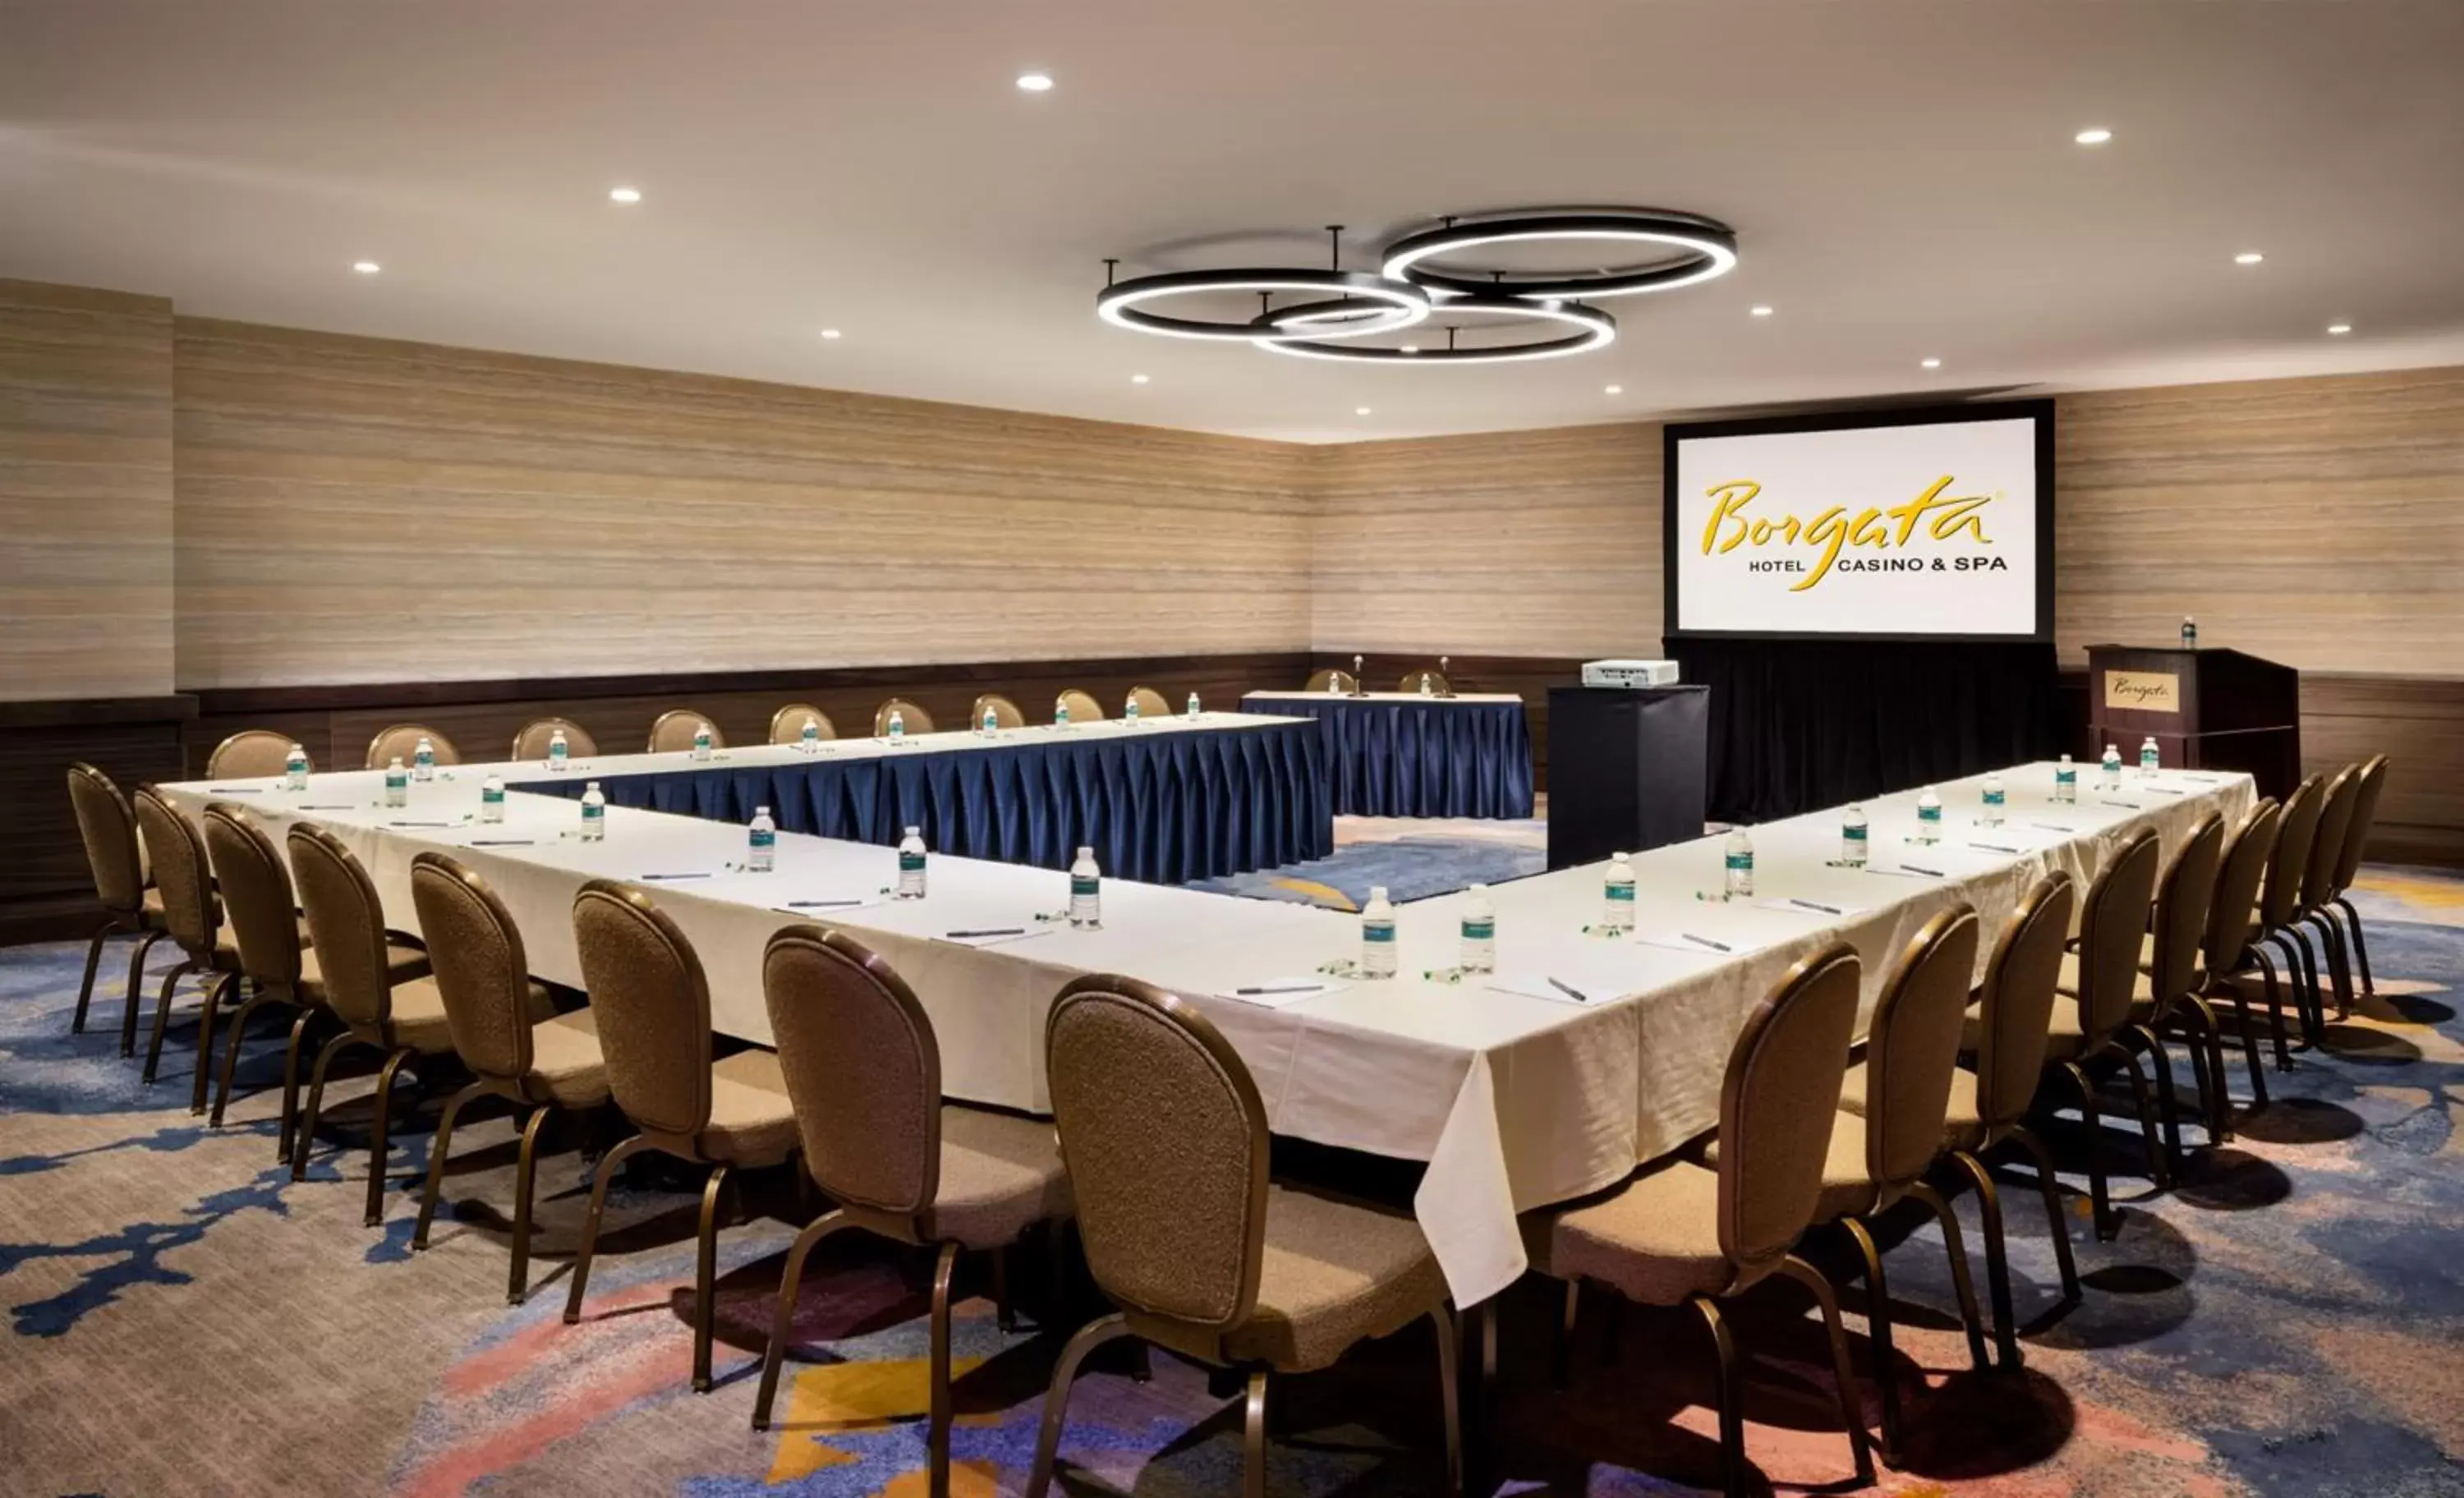 Meeting/conference room in Borgata Hotel Casino & Spa